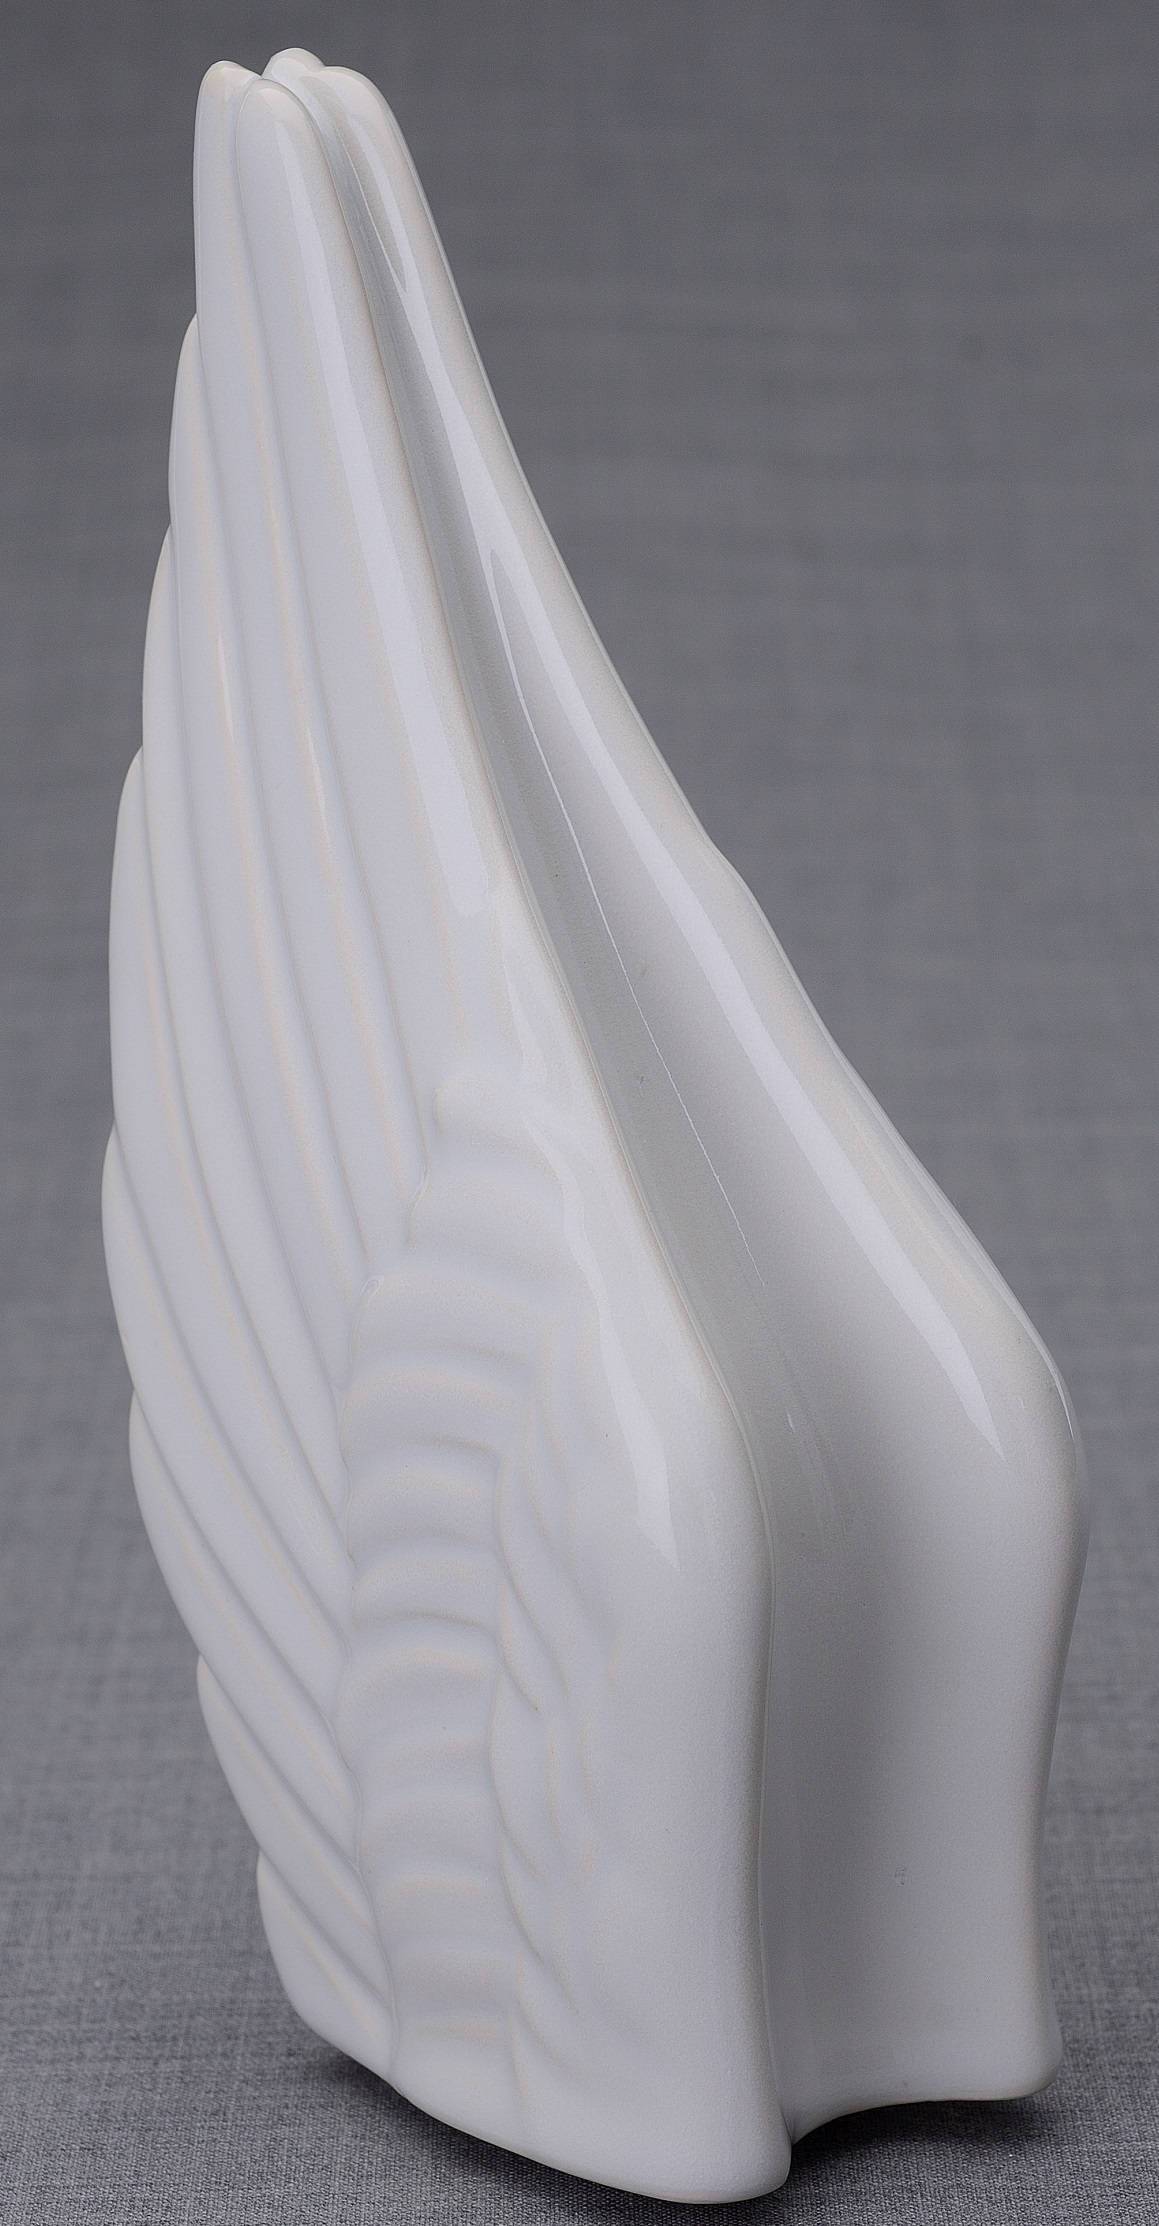 
                  
                    Urna de cremación hecha a mano para cenizas, color blanco-PulvisArtUrns-Pulvis Art Urns
                  
                